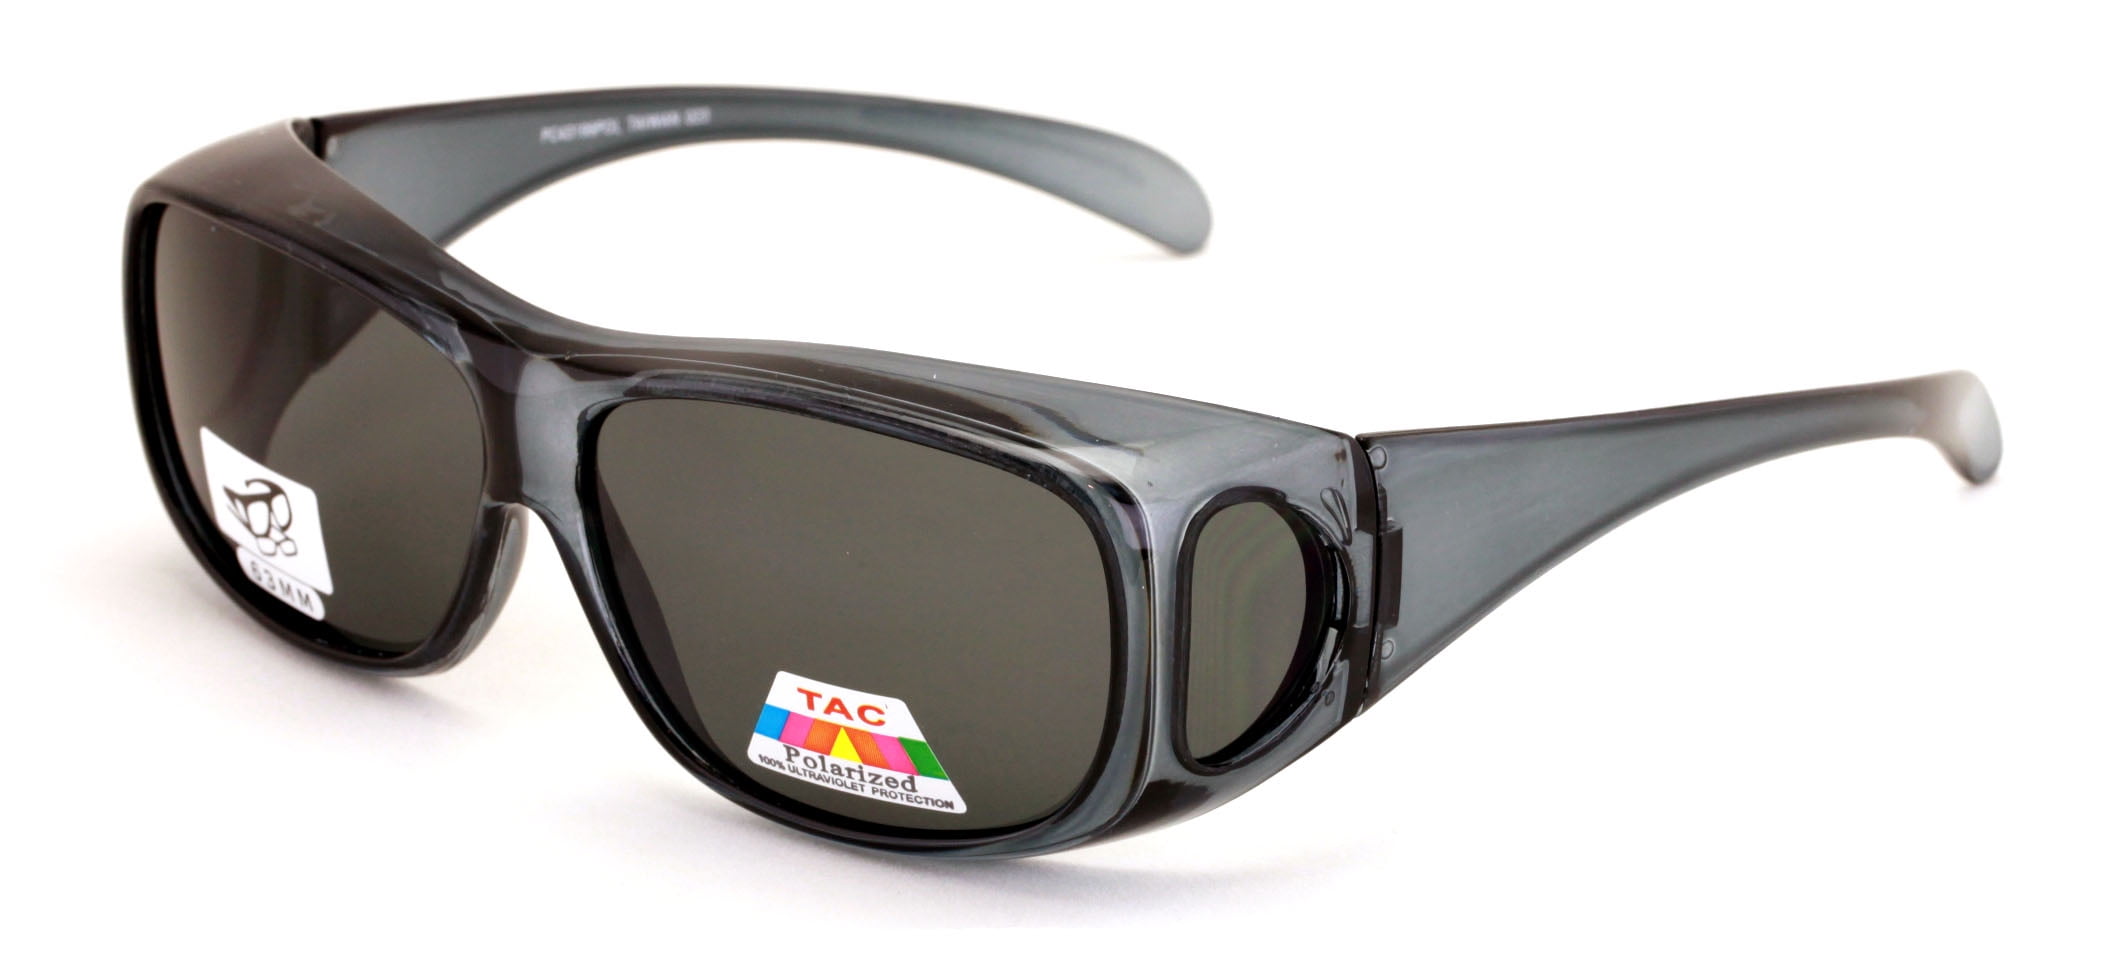 Polarised Classic Retro Medium Sized Matt Black Polarised Sunglasses Full UV400 